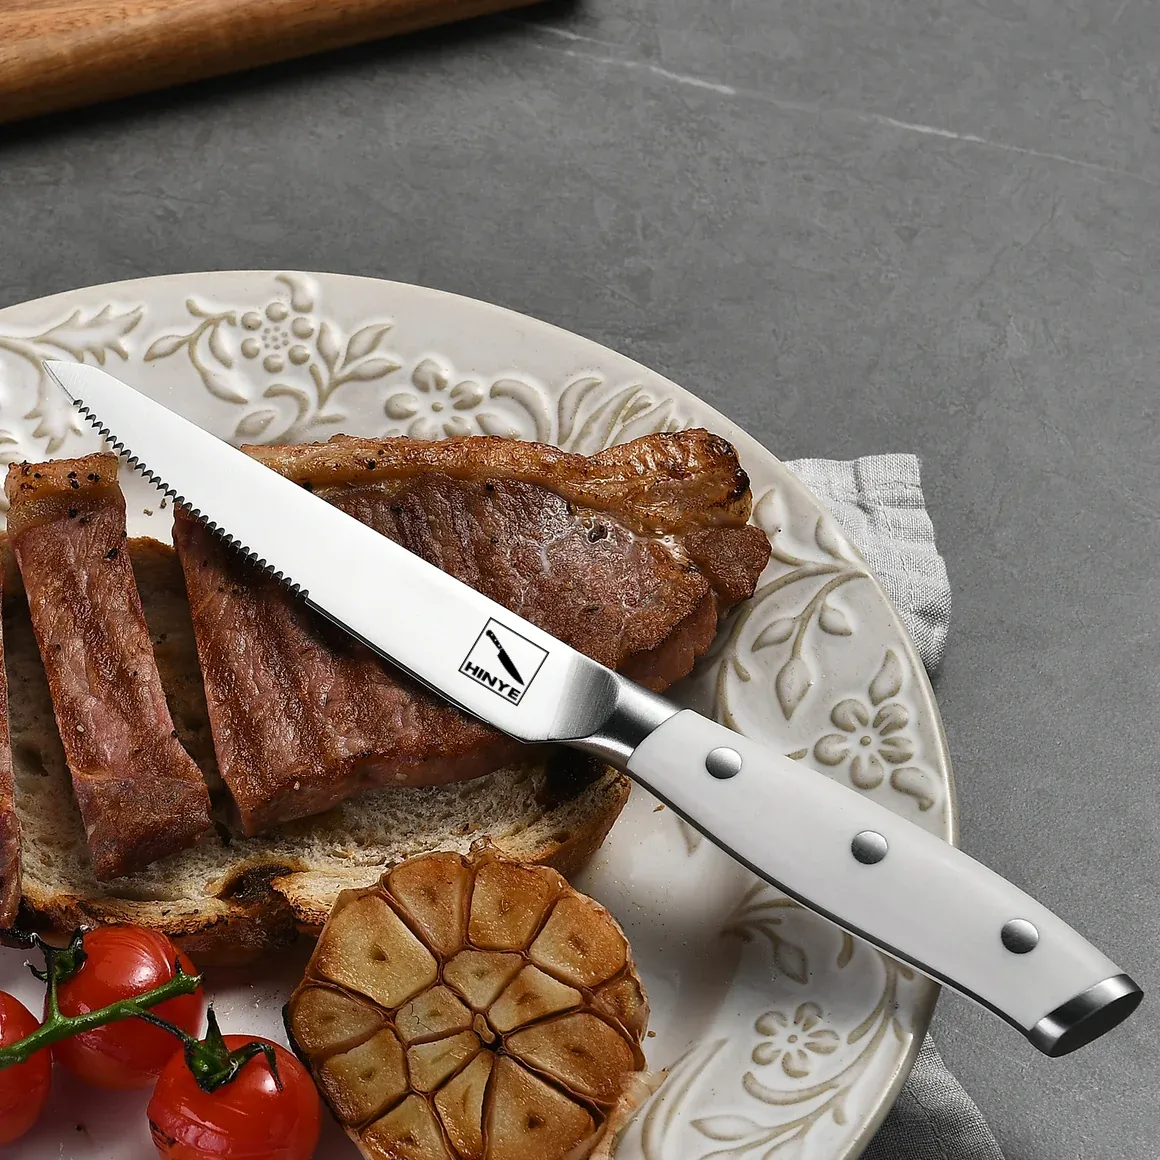 Hinye-Stahl 6 Piece Steak Knives Set